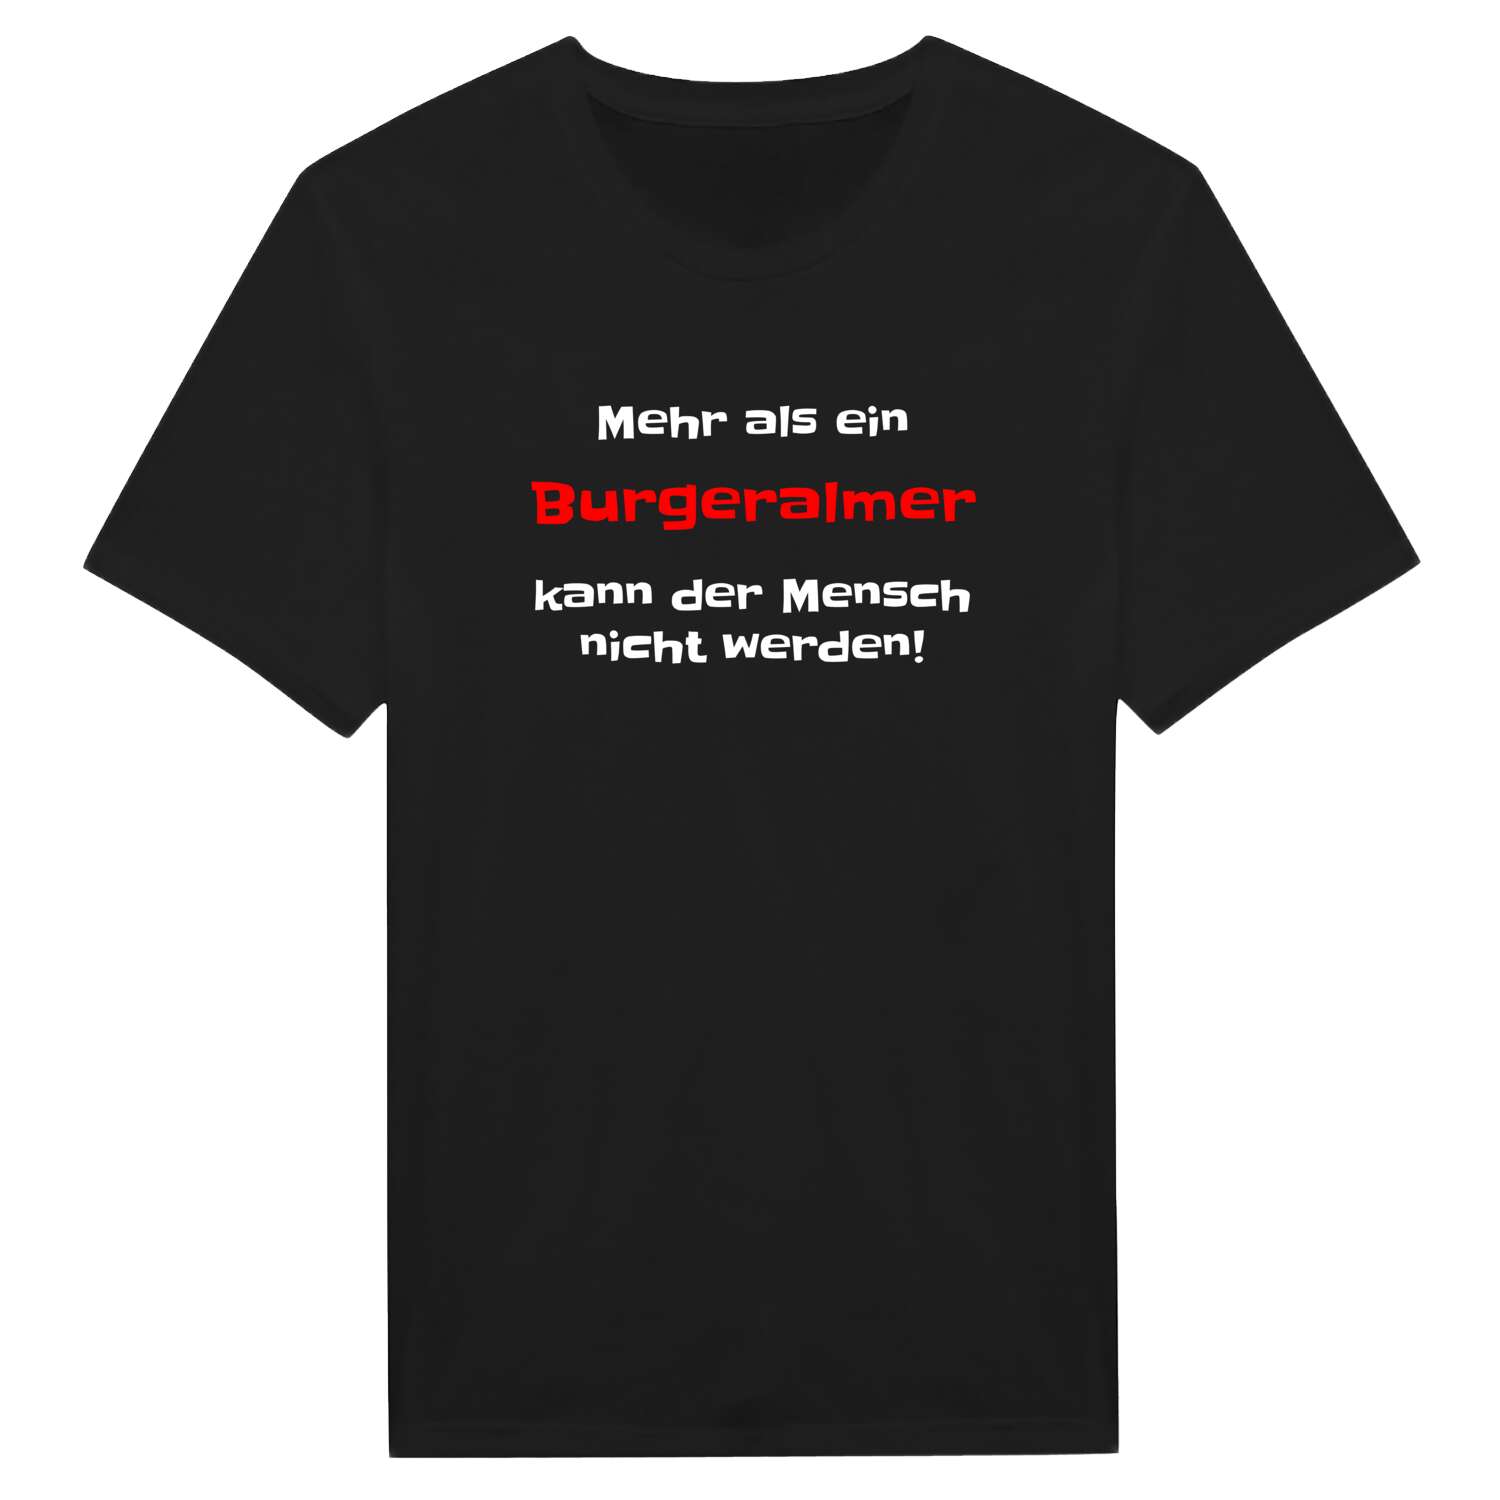 Burgeralm T-Shirt »Mehr als ein«